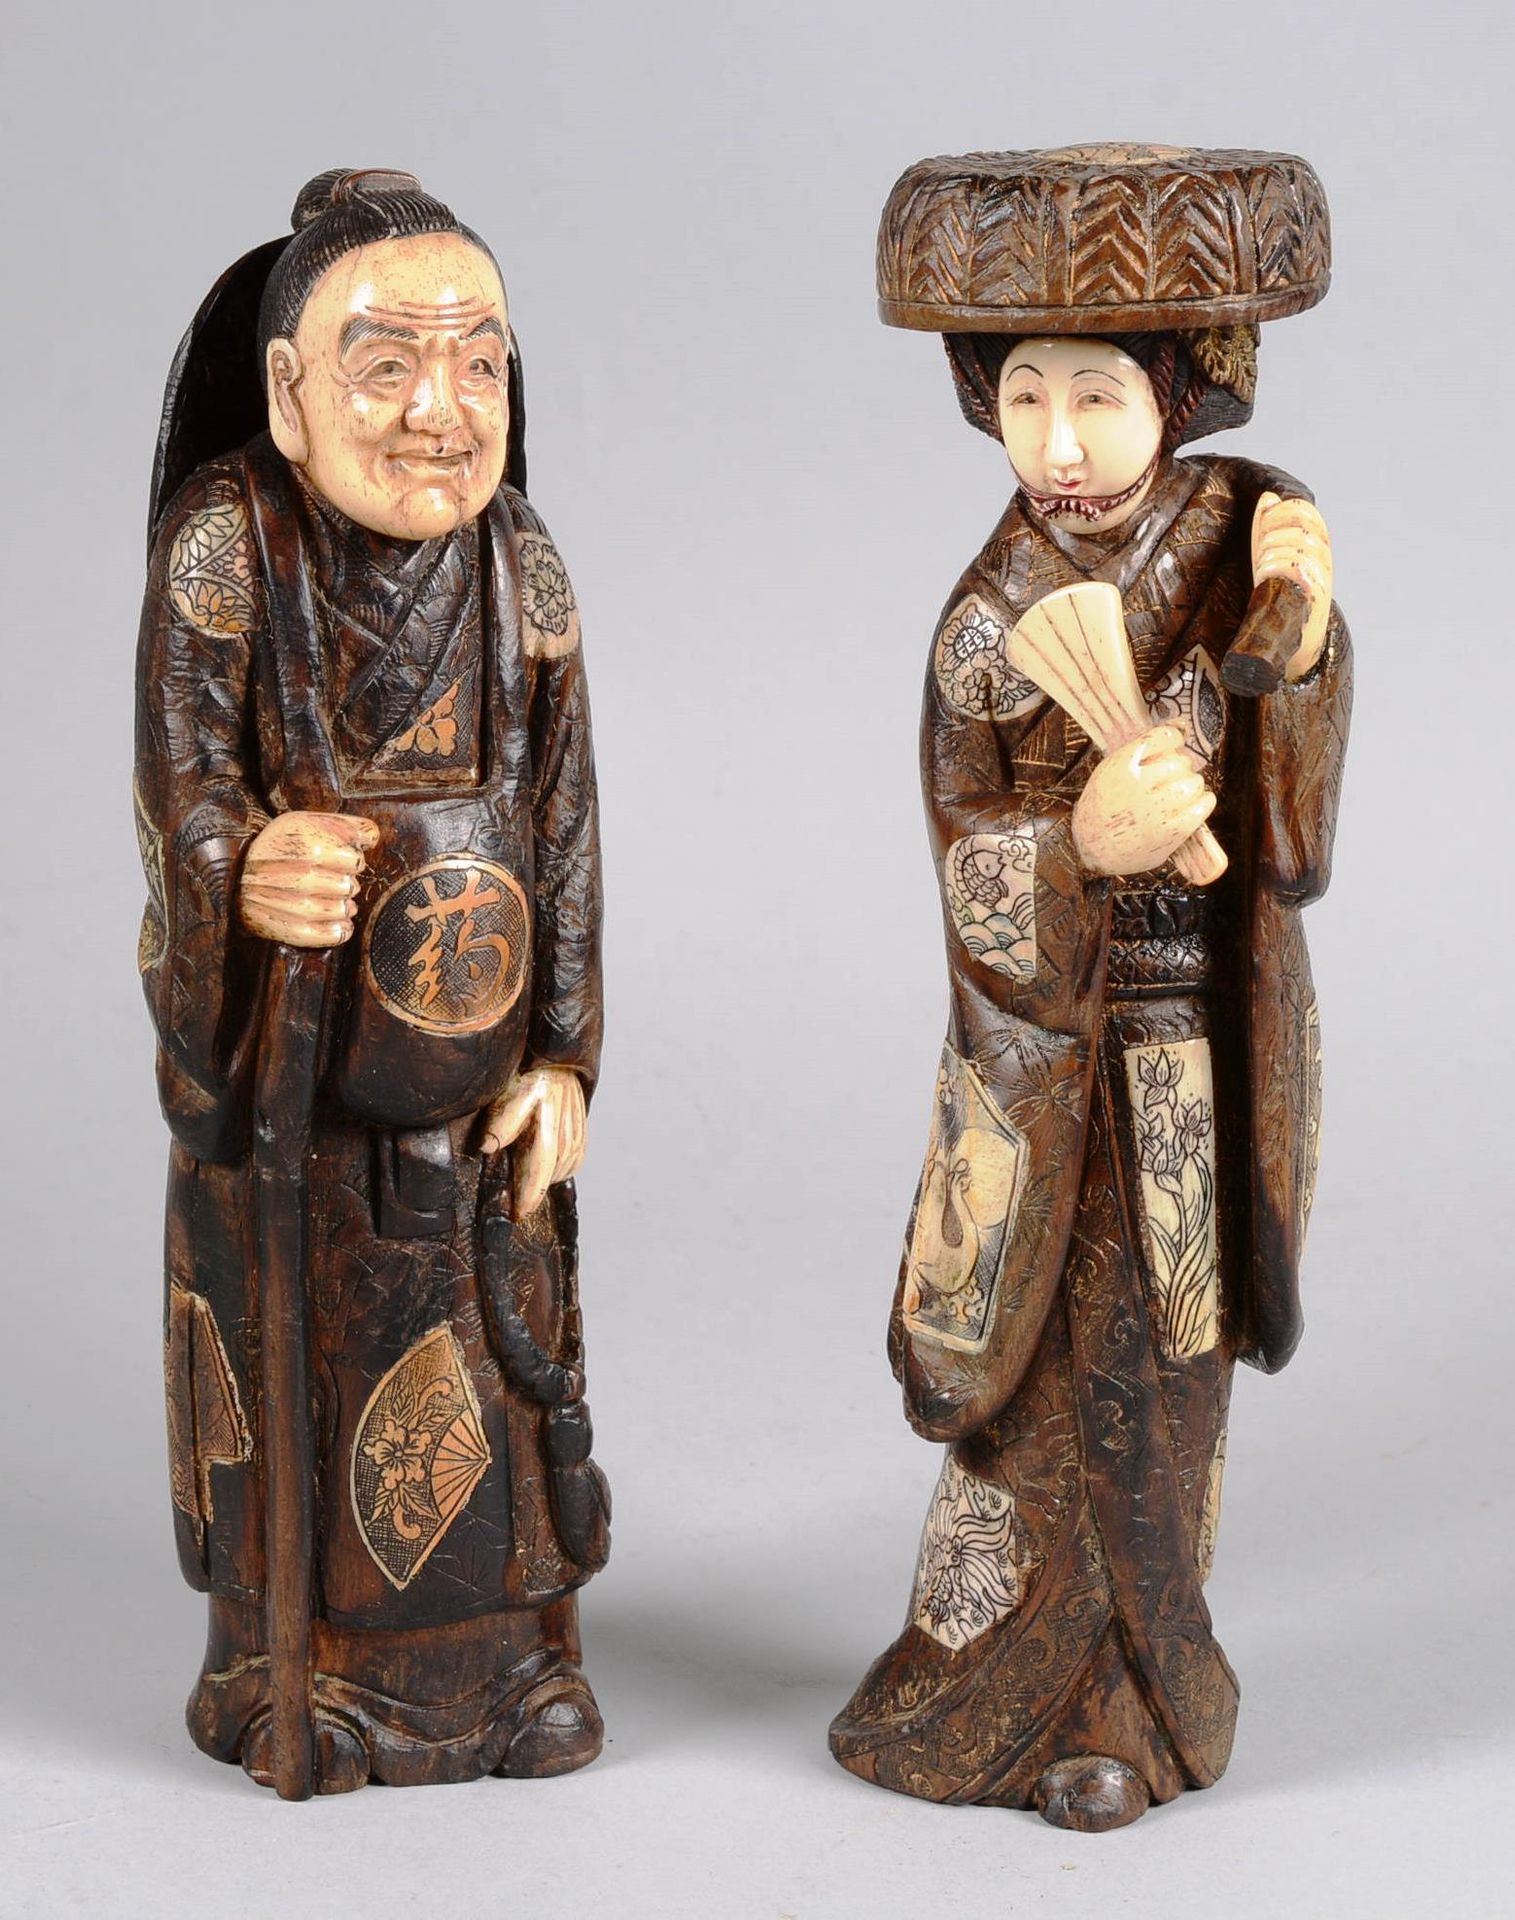 JAPON. JAPAN.

Zwei geschnitzte Holzfiguren, sogenannte Chryselephantine, die Ge&hellip;